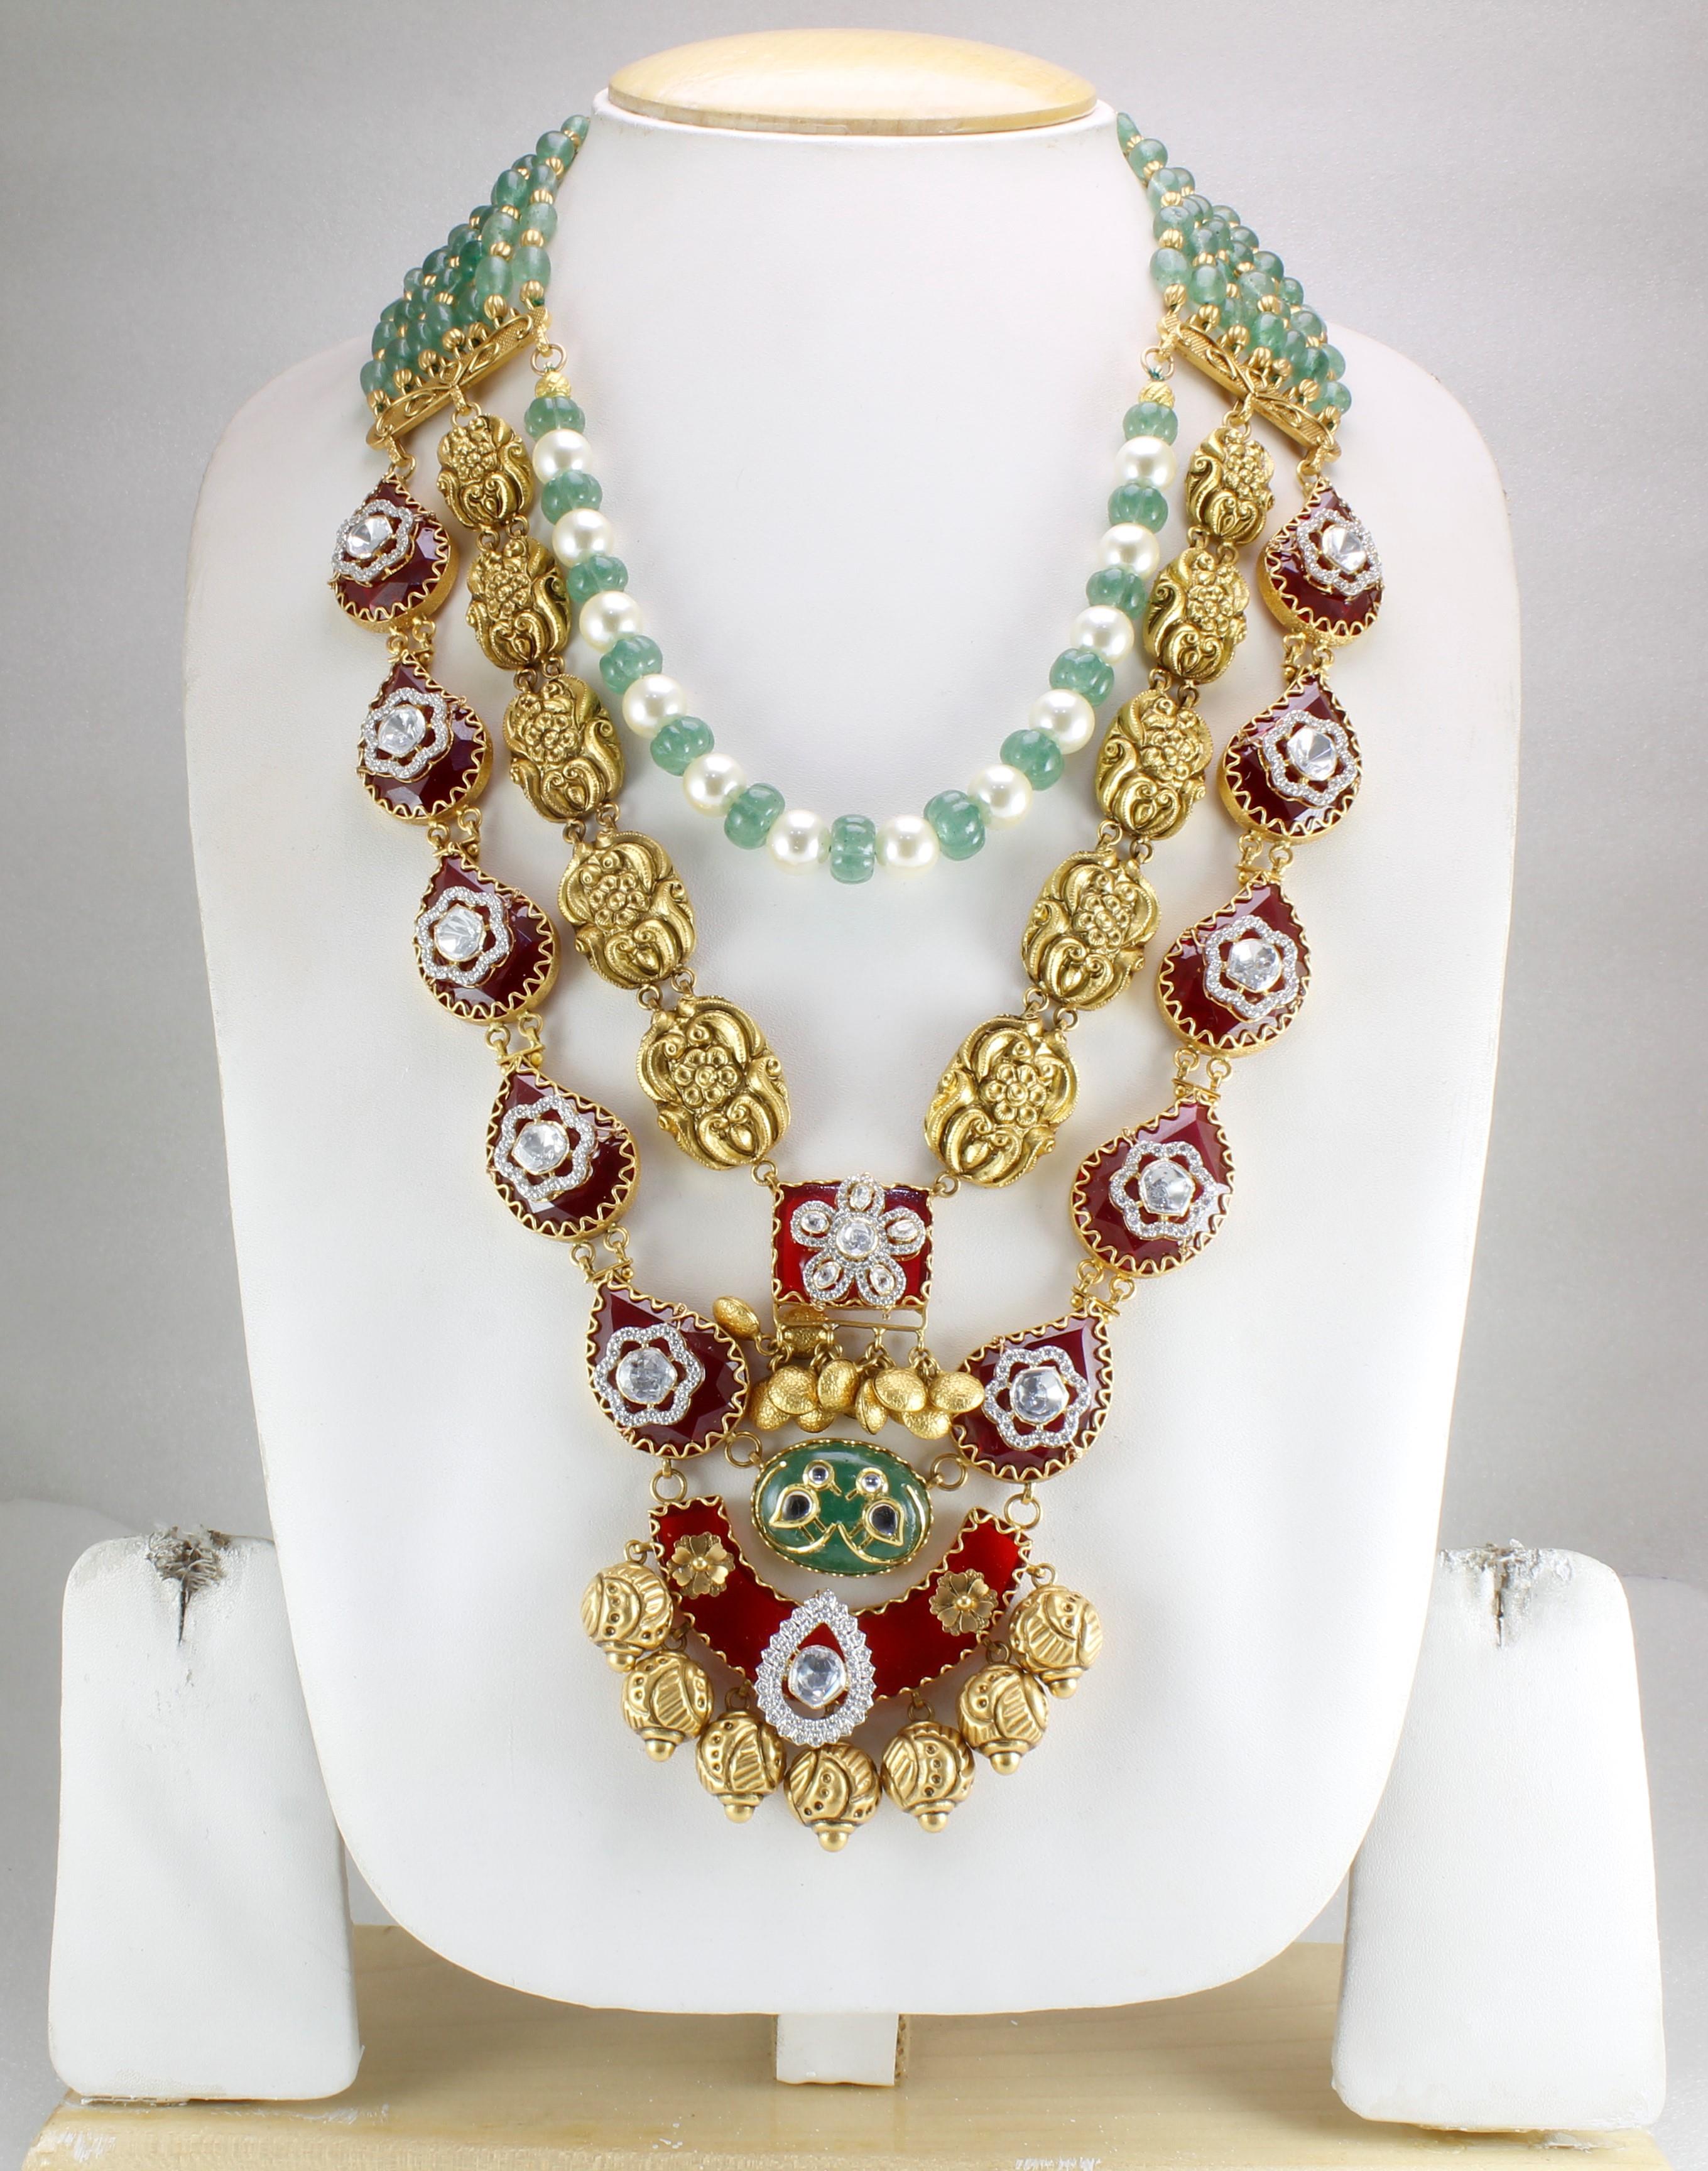 GKA Jewels and Crafts Pvt Ltd